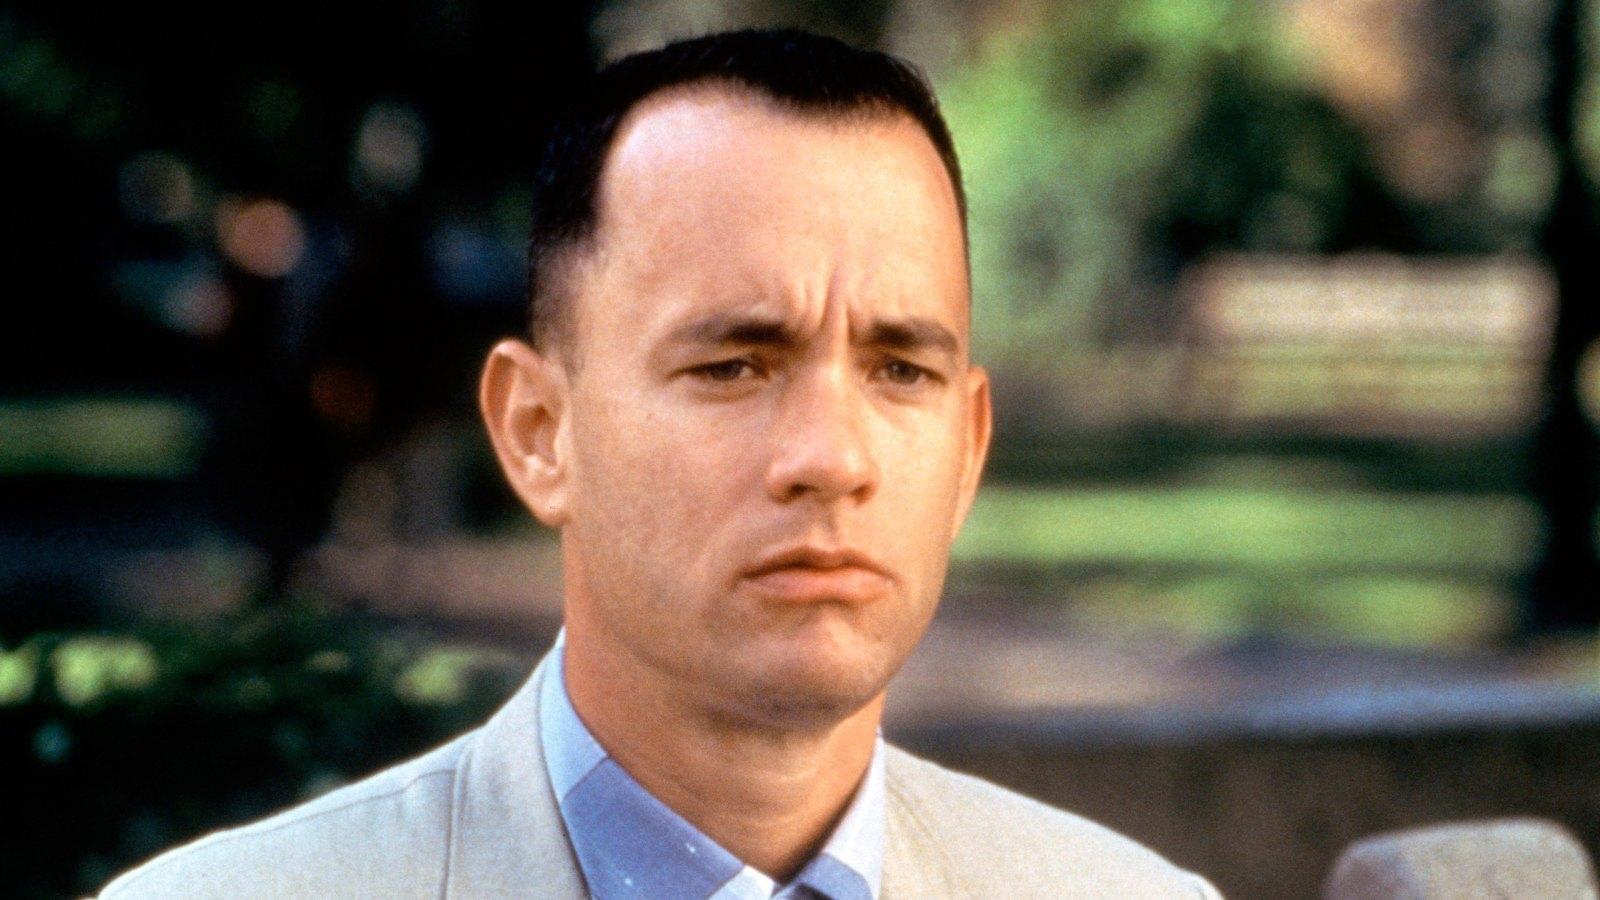 Tom Hanks' Best Roles: 'Forrest Gump, ' 'Big' and More